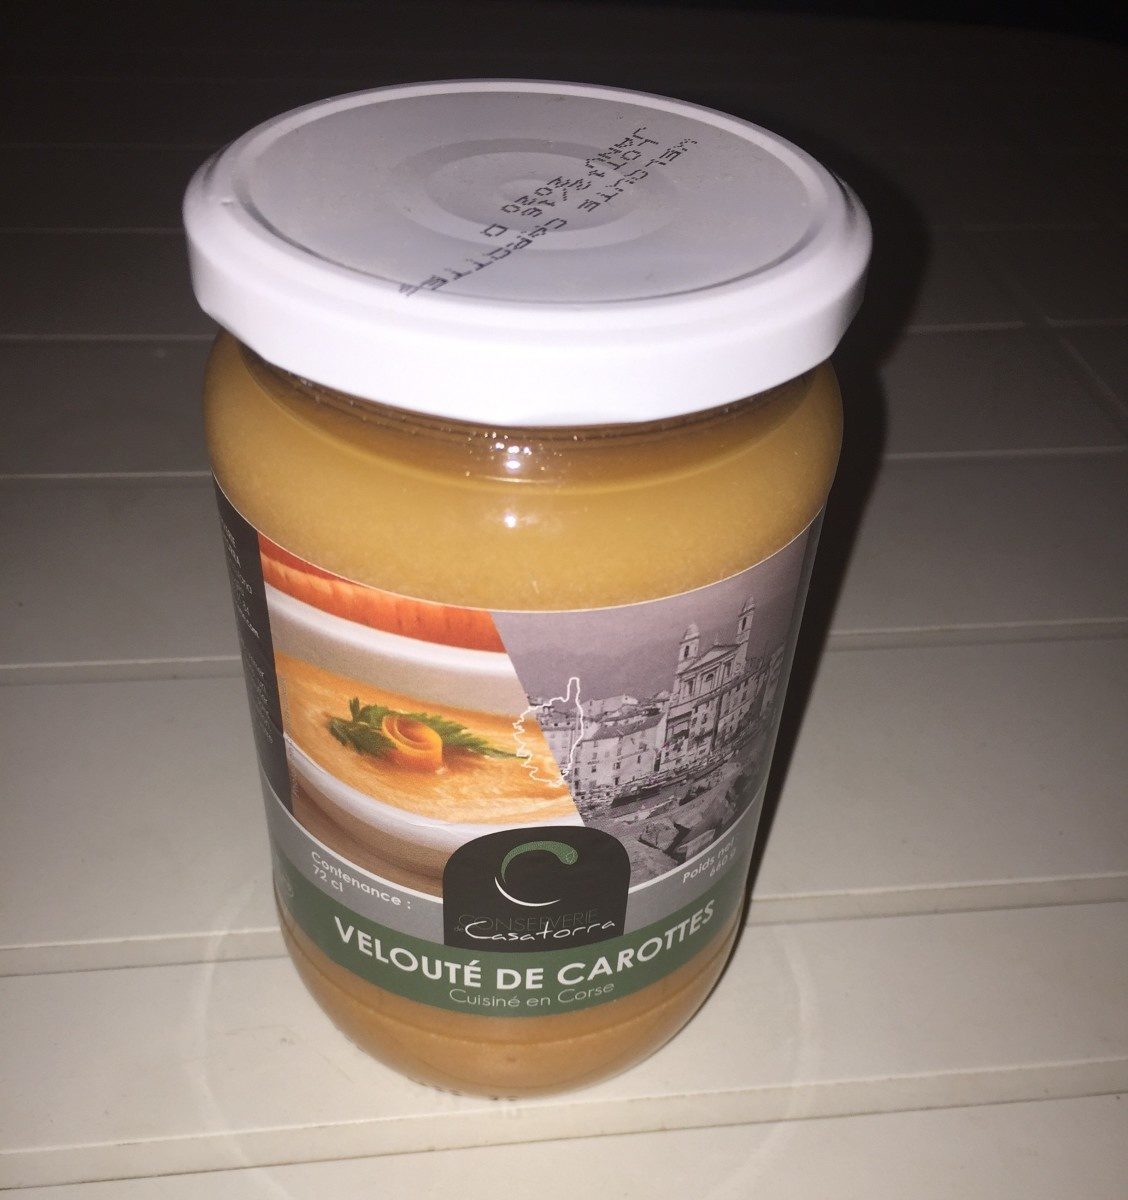 Velouté de carottes - Product - fr